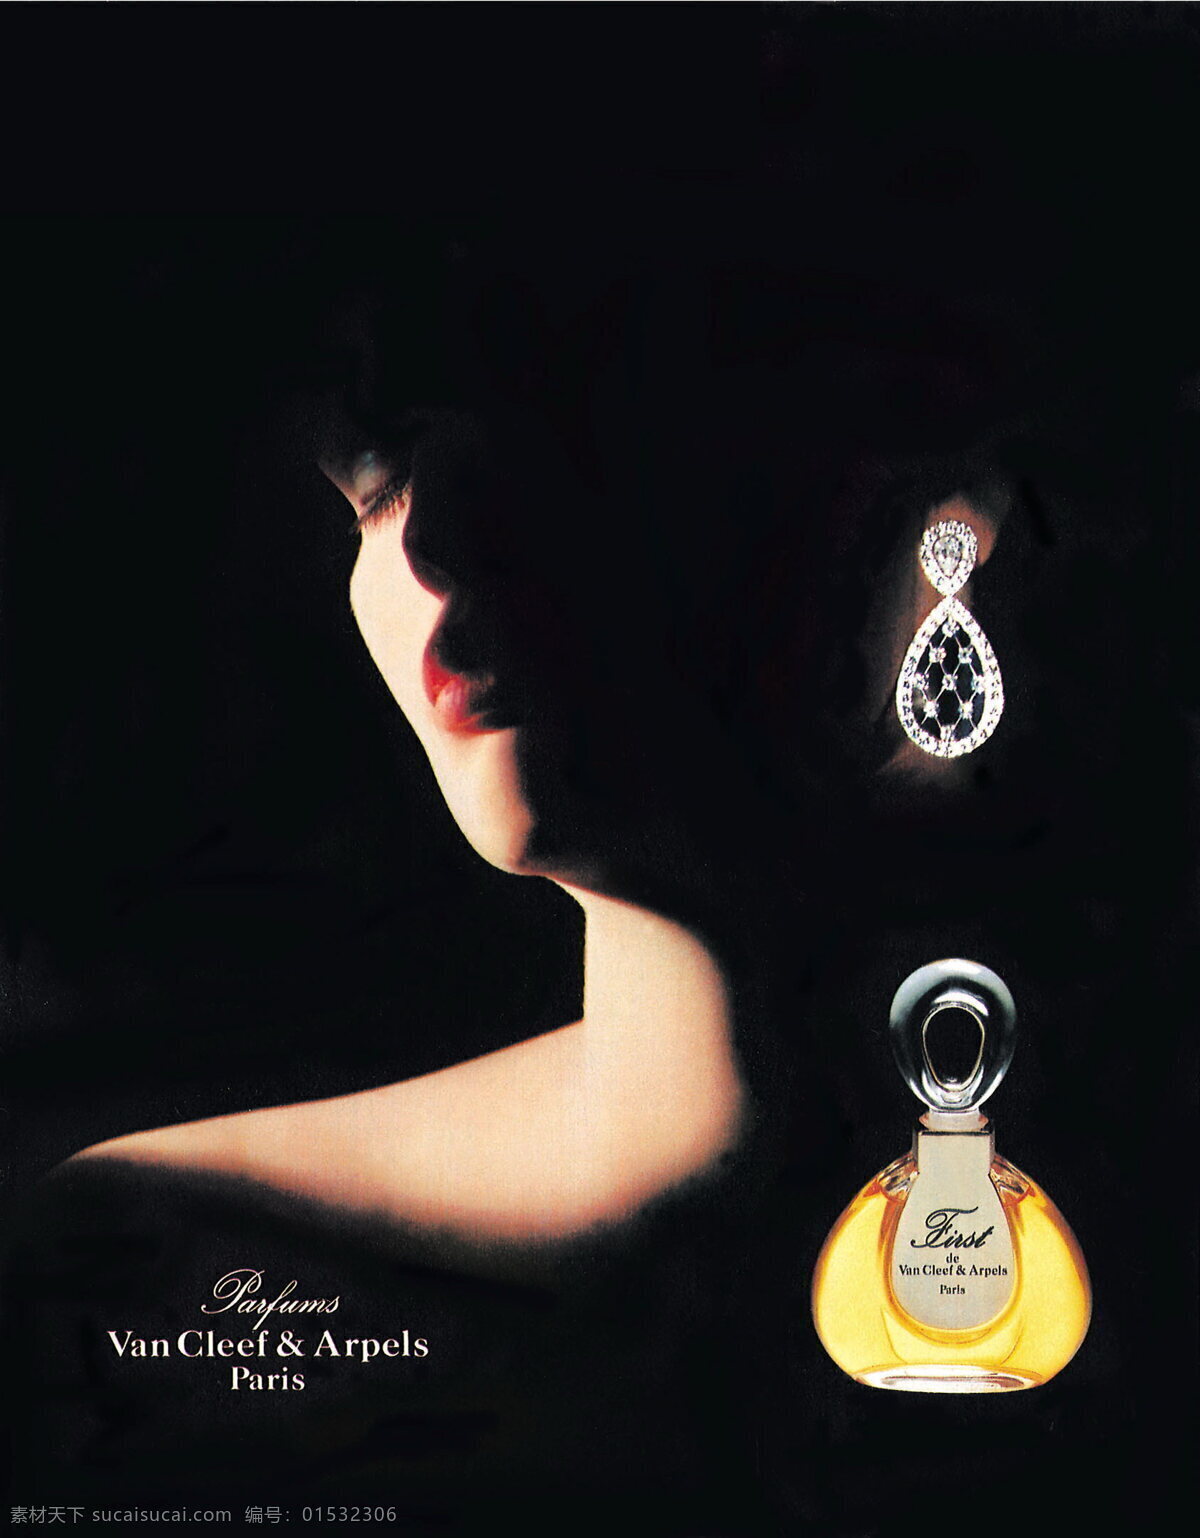 法国 香水 化妆品 广告 创意设计 设计素材 美容化妆 平面创意 平面设计 黑色